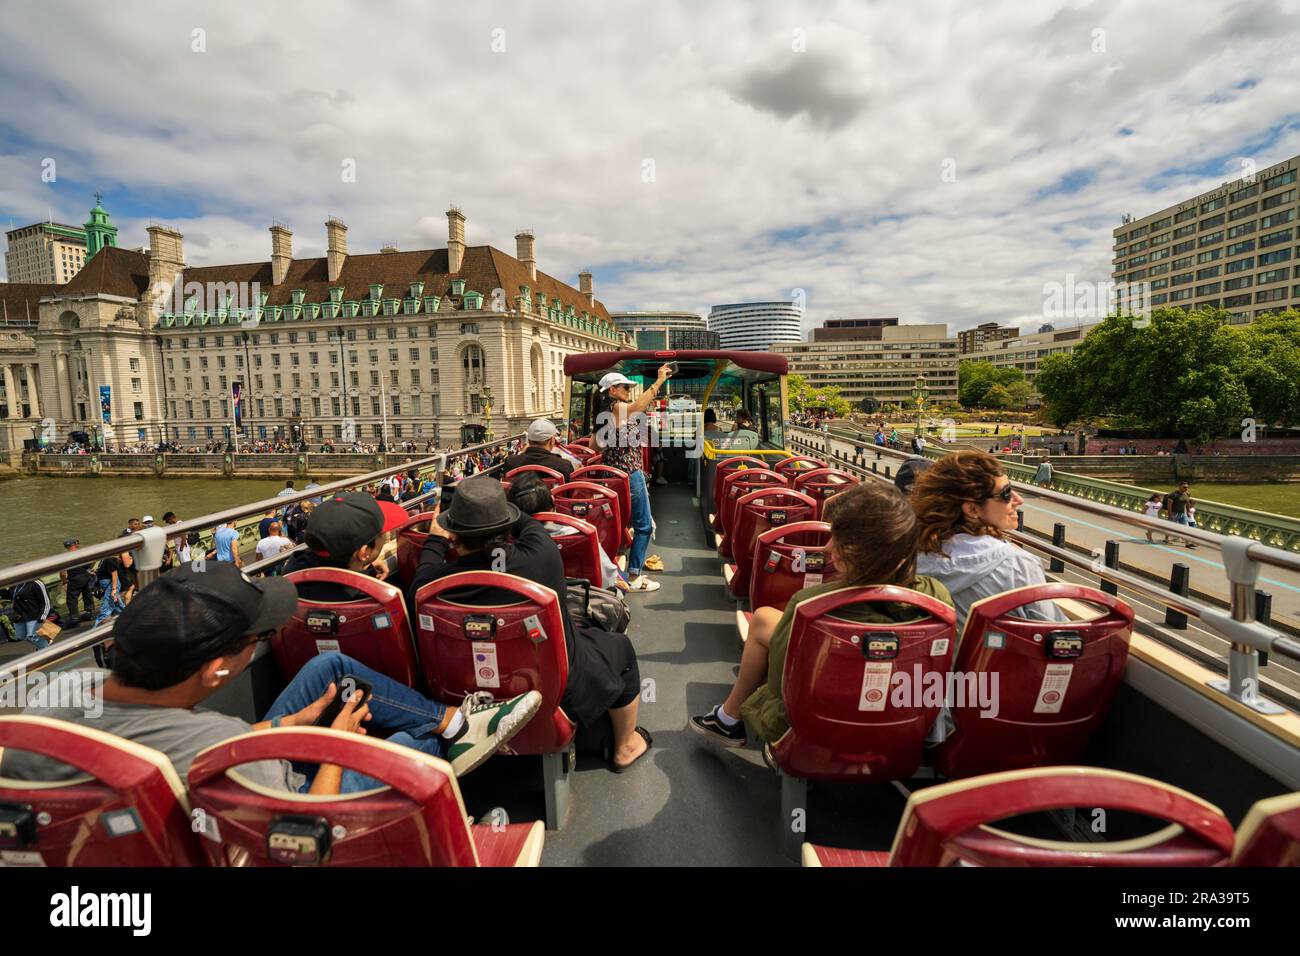 Roter Doppeldeckerbus mit offenem Oberdeck, Hop-on-Hop-off-Busfahrt über die Themse, Touristen besichtigen Londons wichtigste Sehenswürdigkeiten, historische Stätten und erhalten einen Blick auf die Skyline der Stadt. Stockfoto